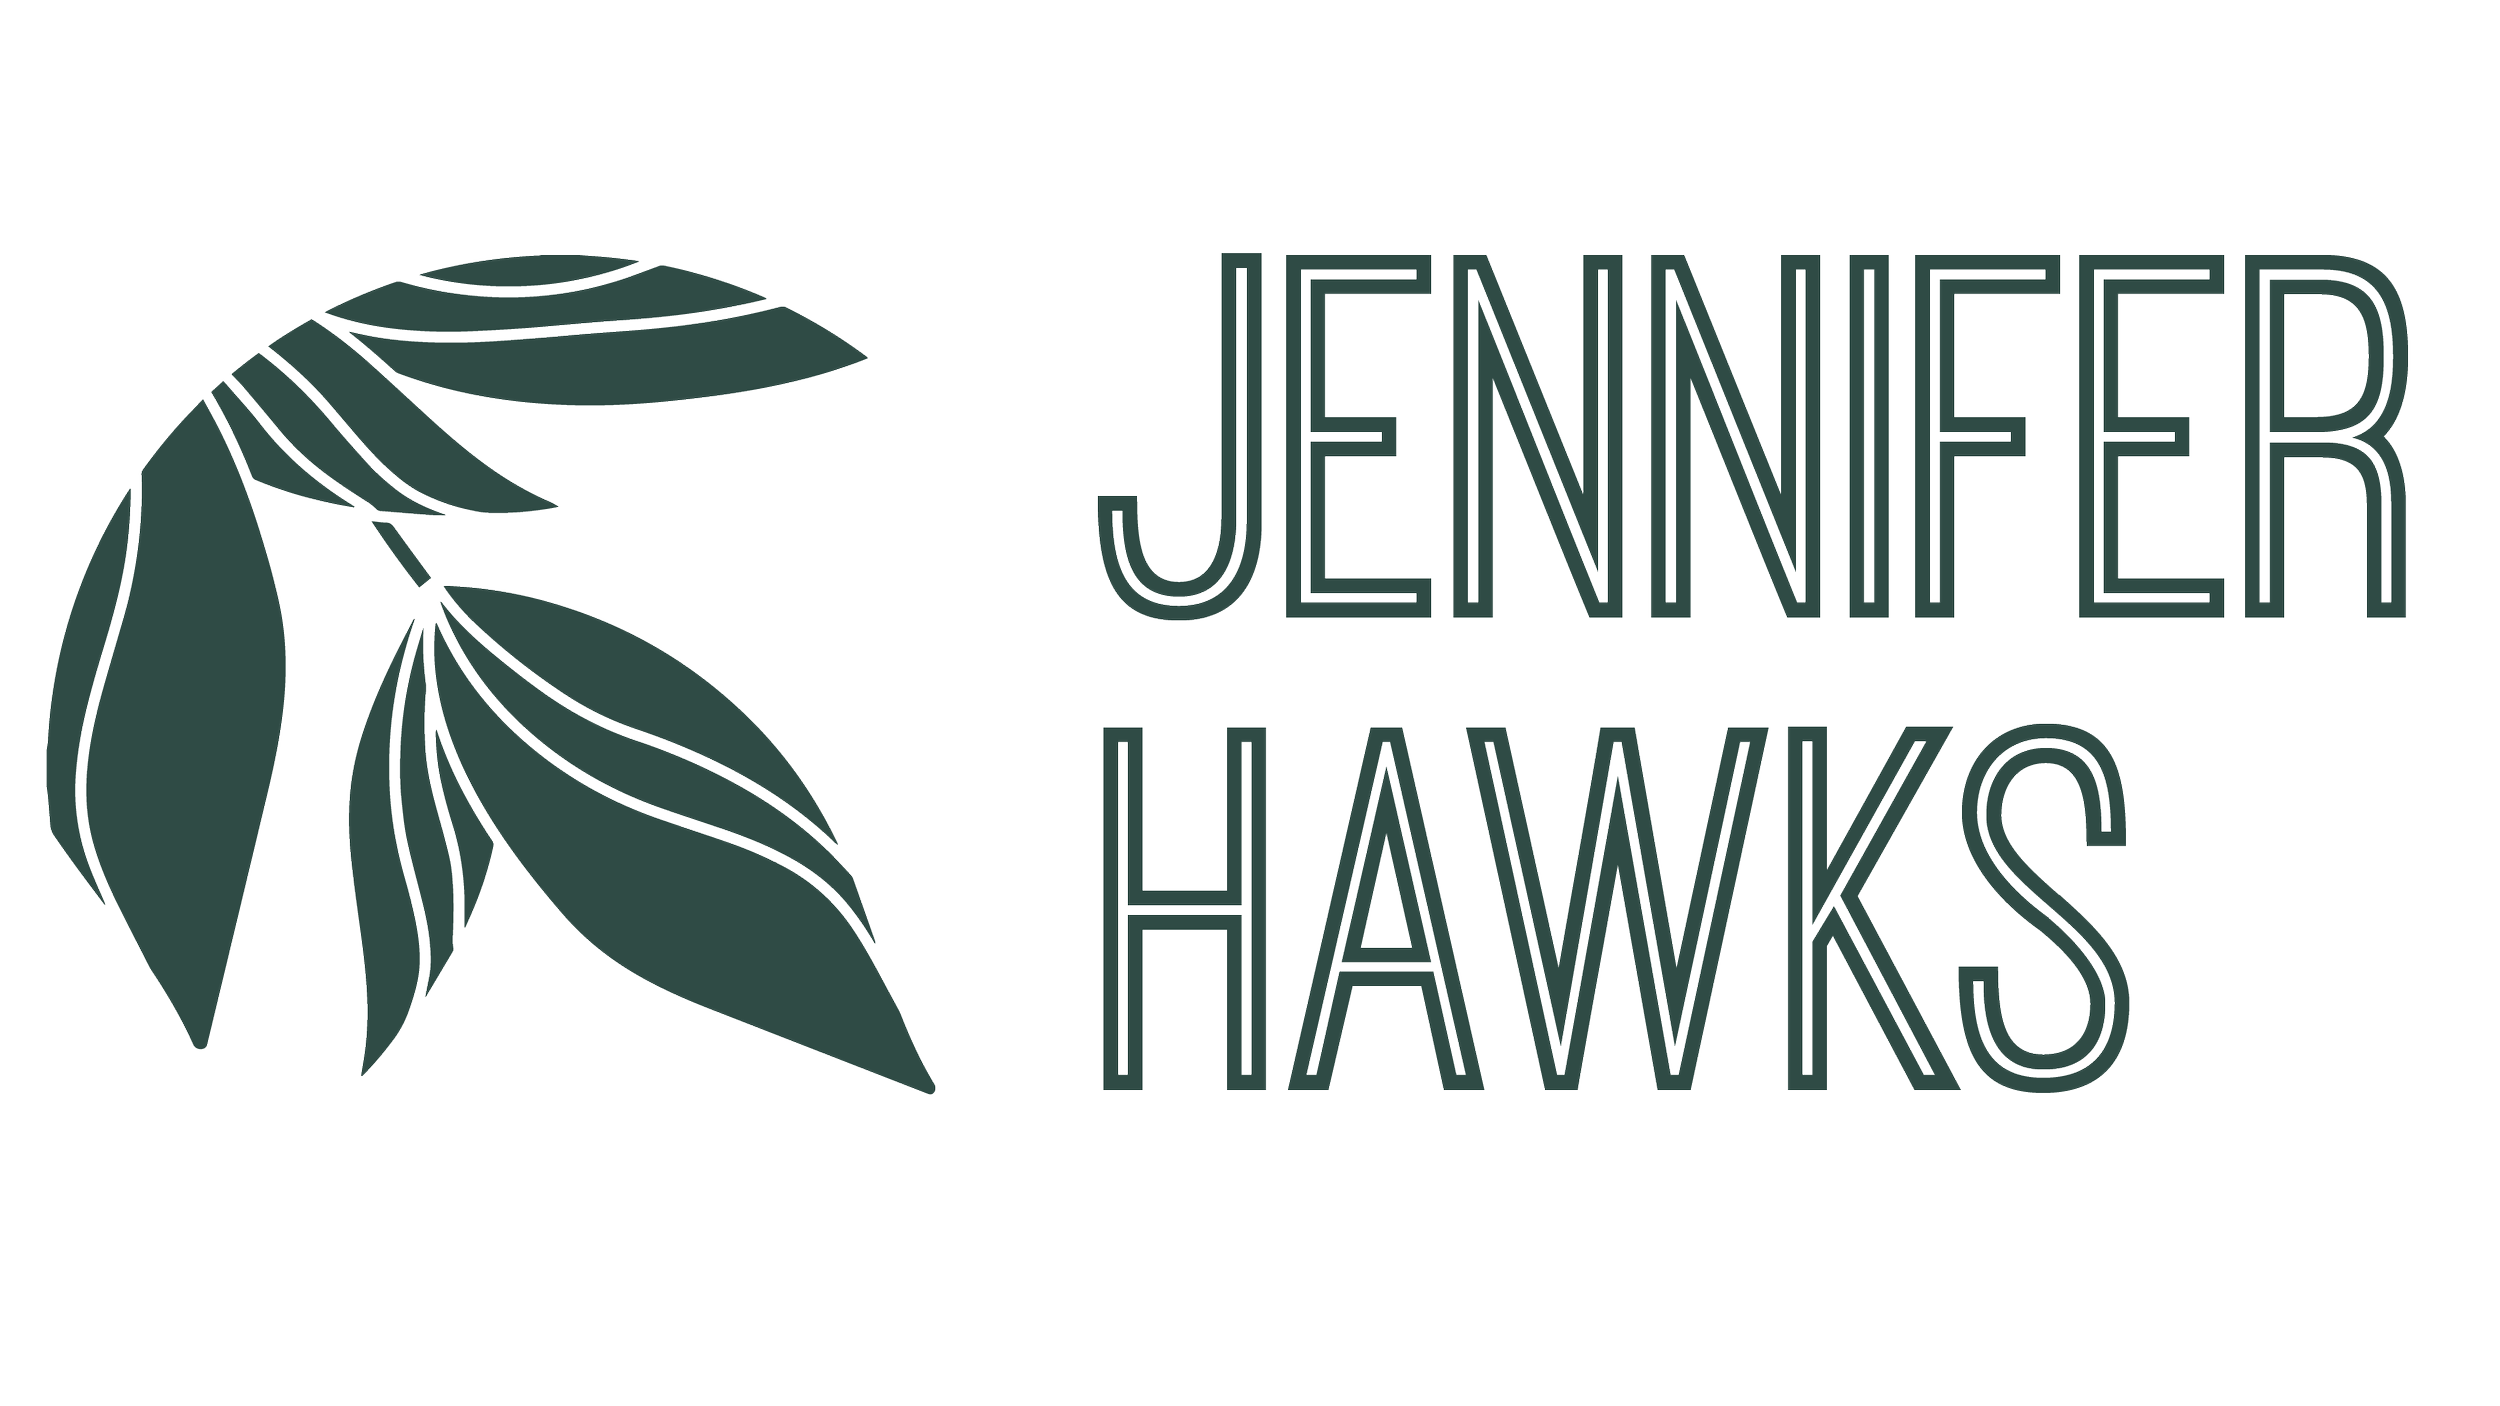 Jennifer Hawks